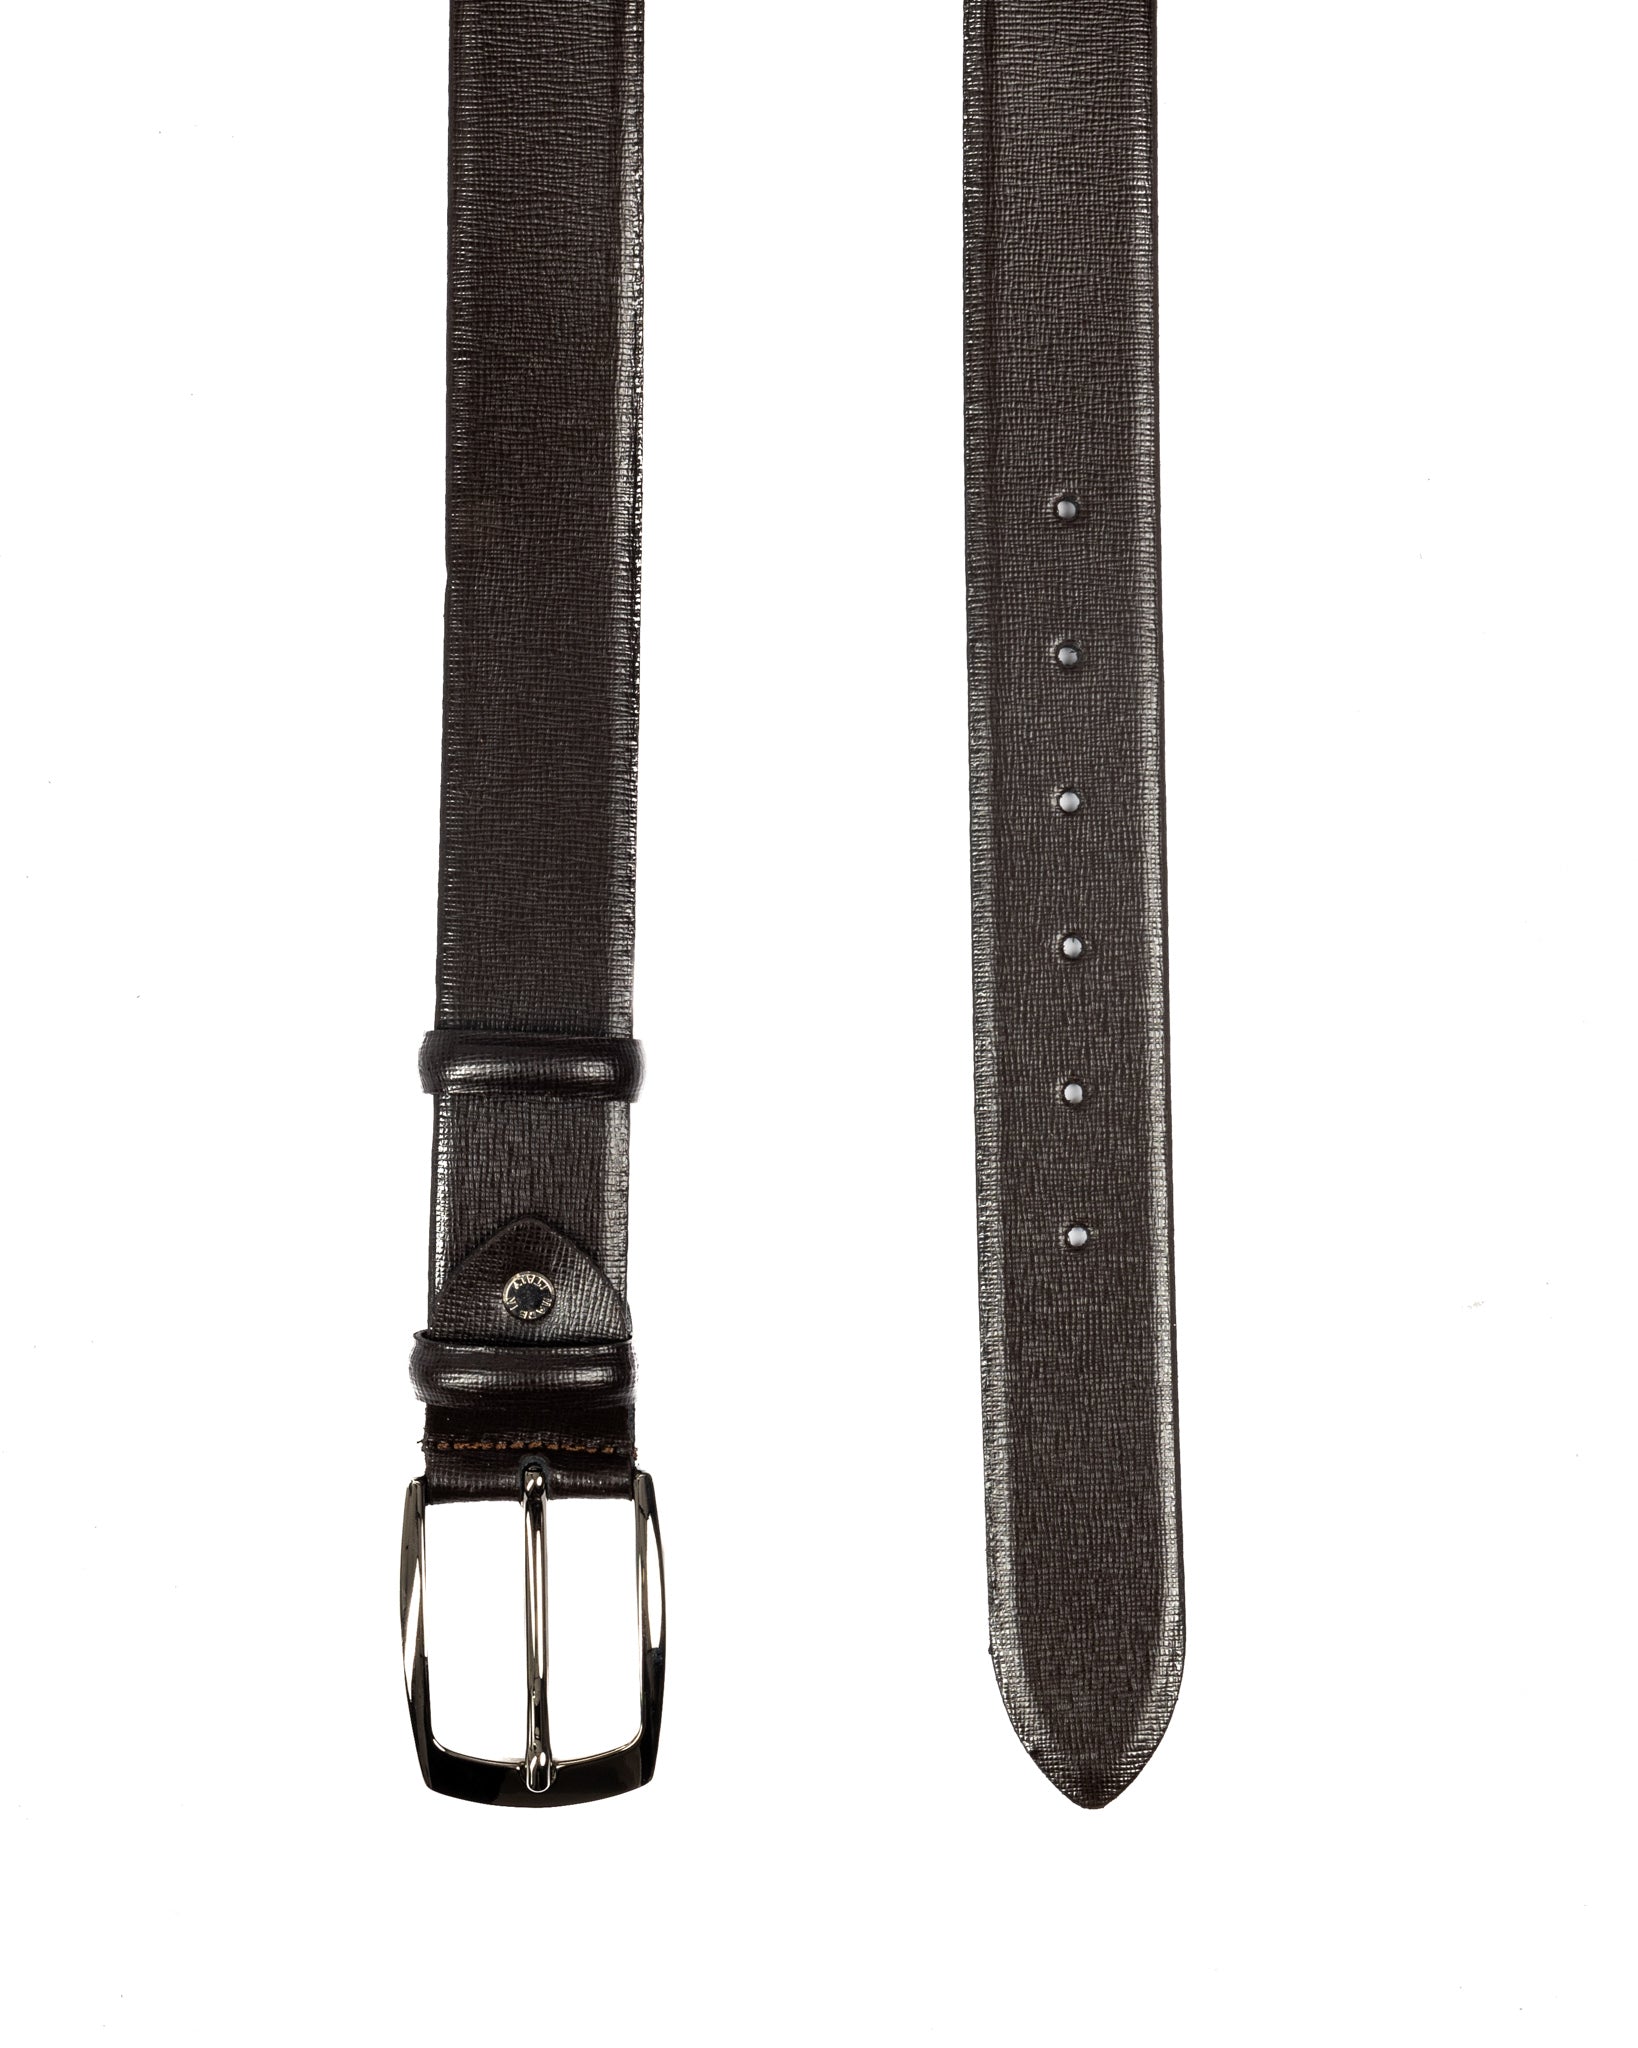 Capalbio - dark brown saffiano leather belt